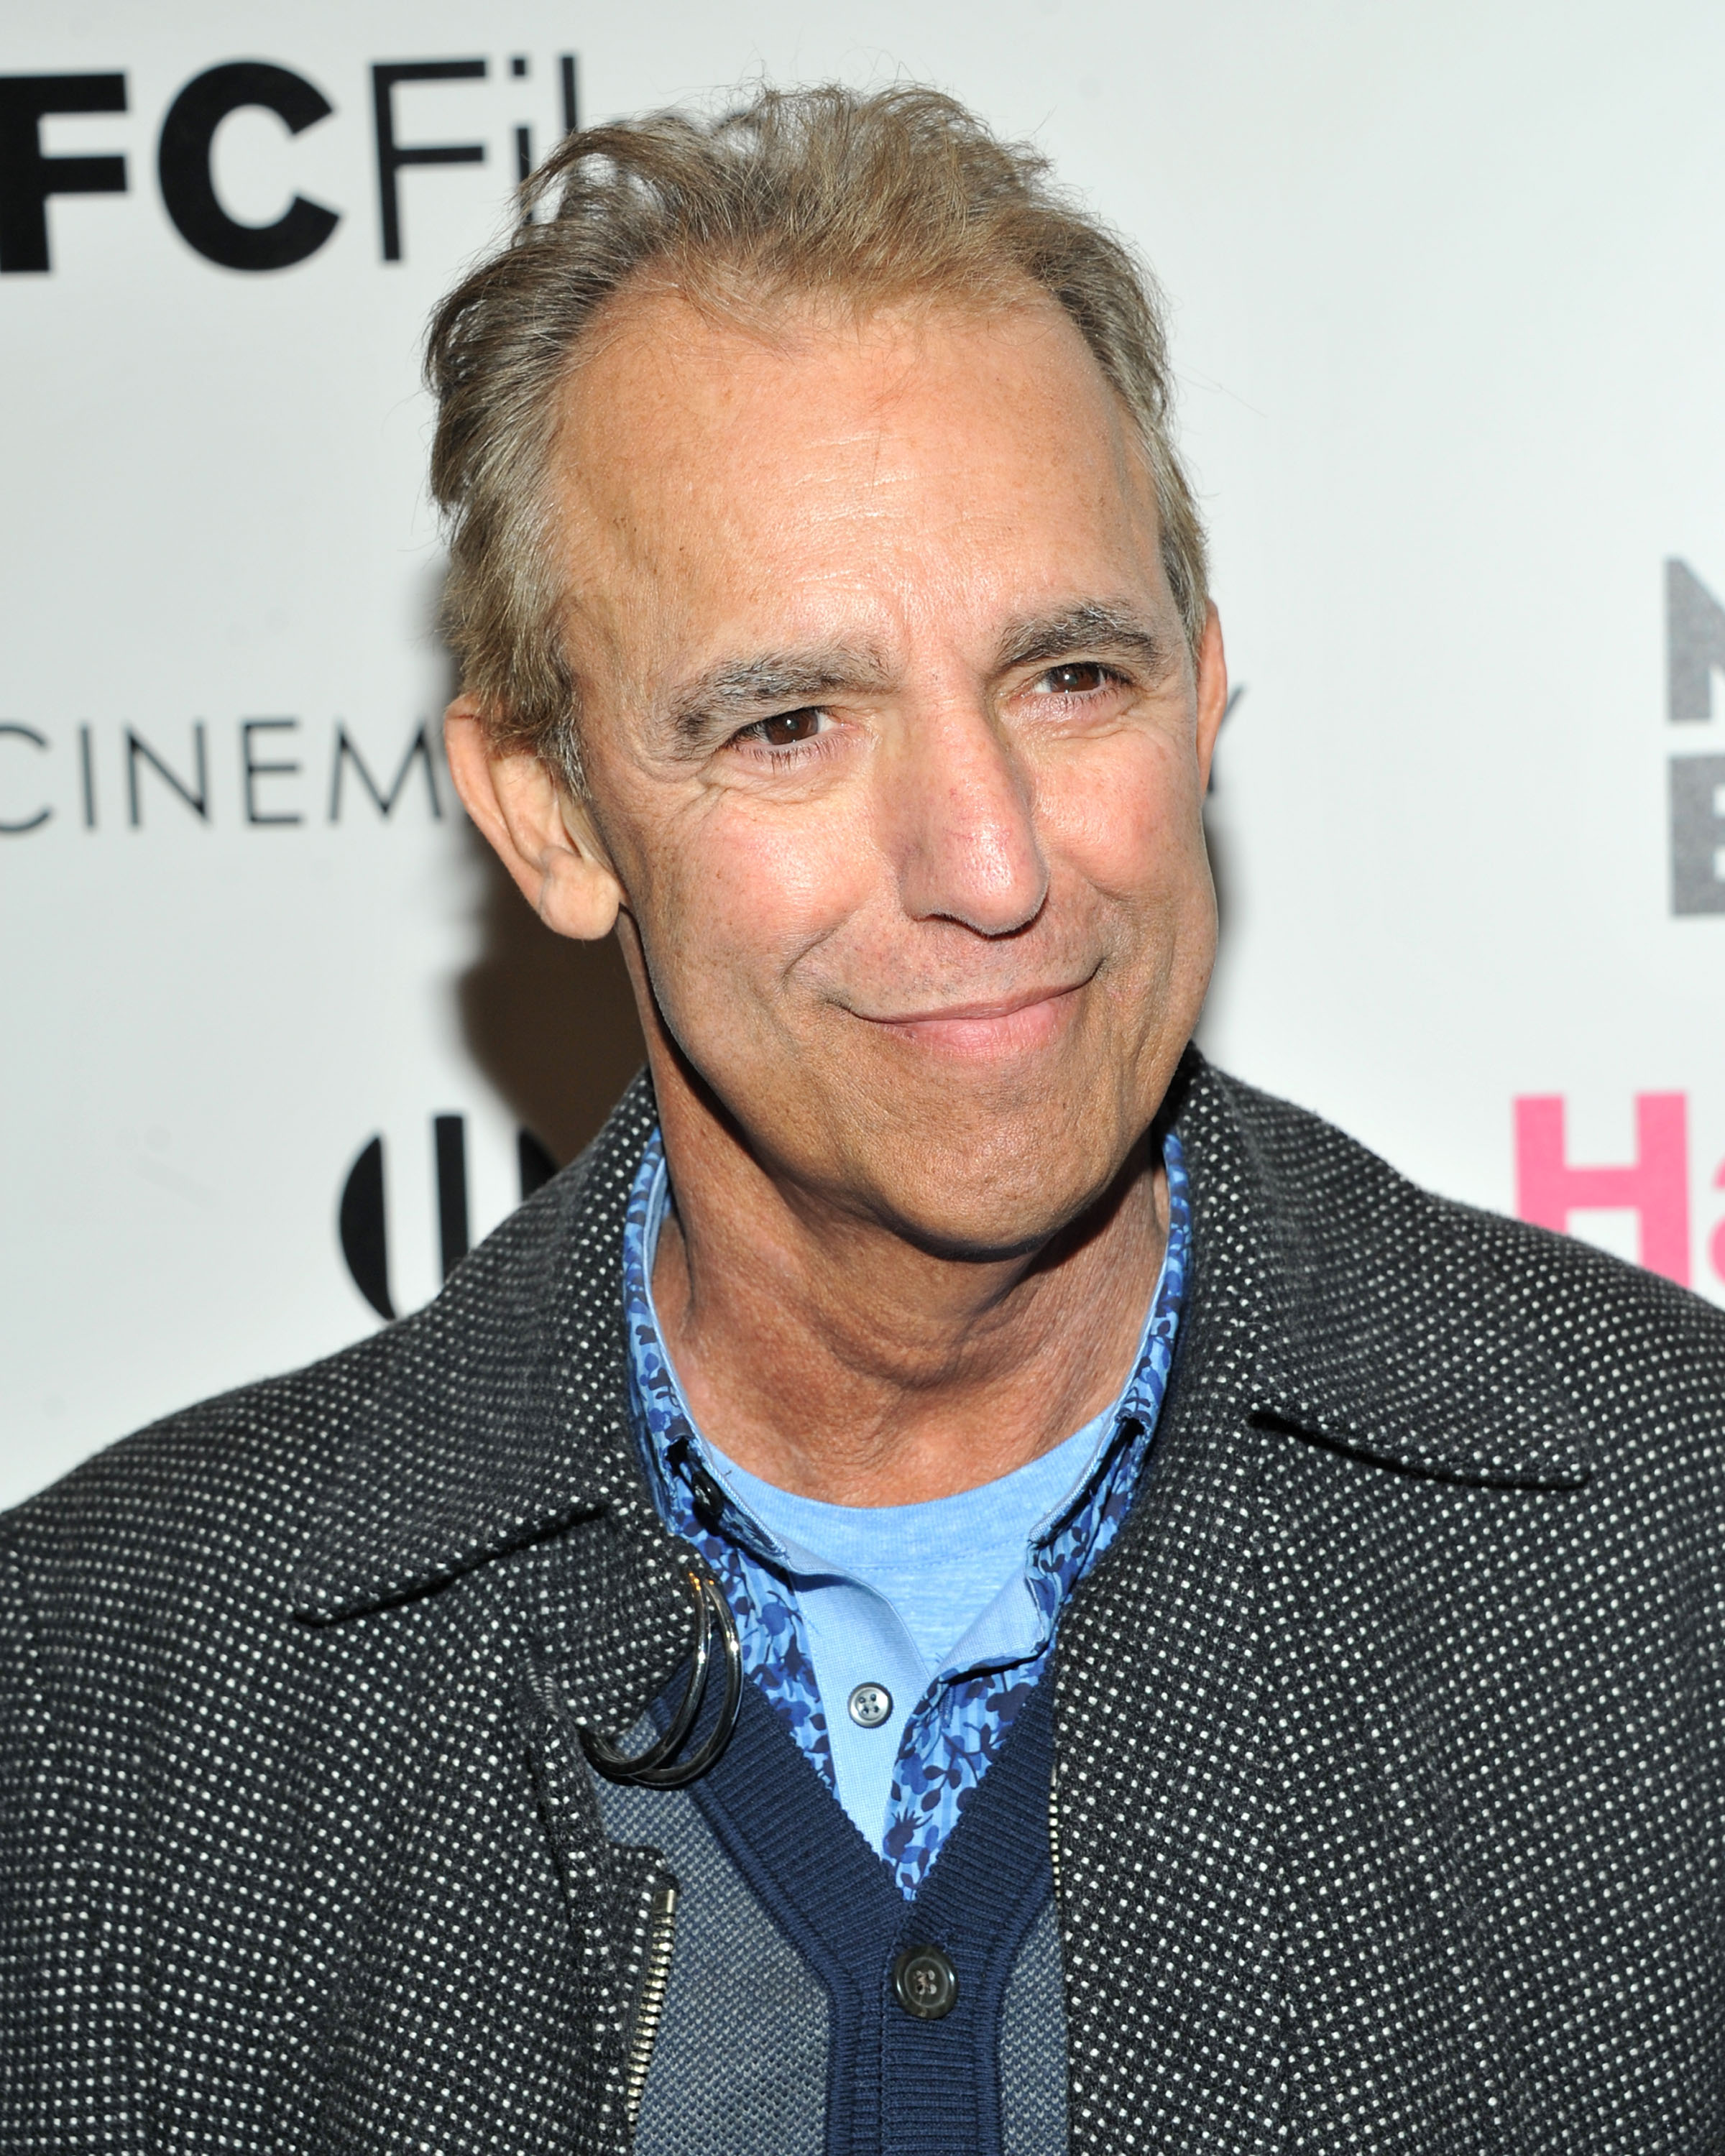 Jay Thomas besucht die Vorführung von "Hateship Loveship" von IFC Films am 8. April 2014 in New York City. | Quelle: Getty Images